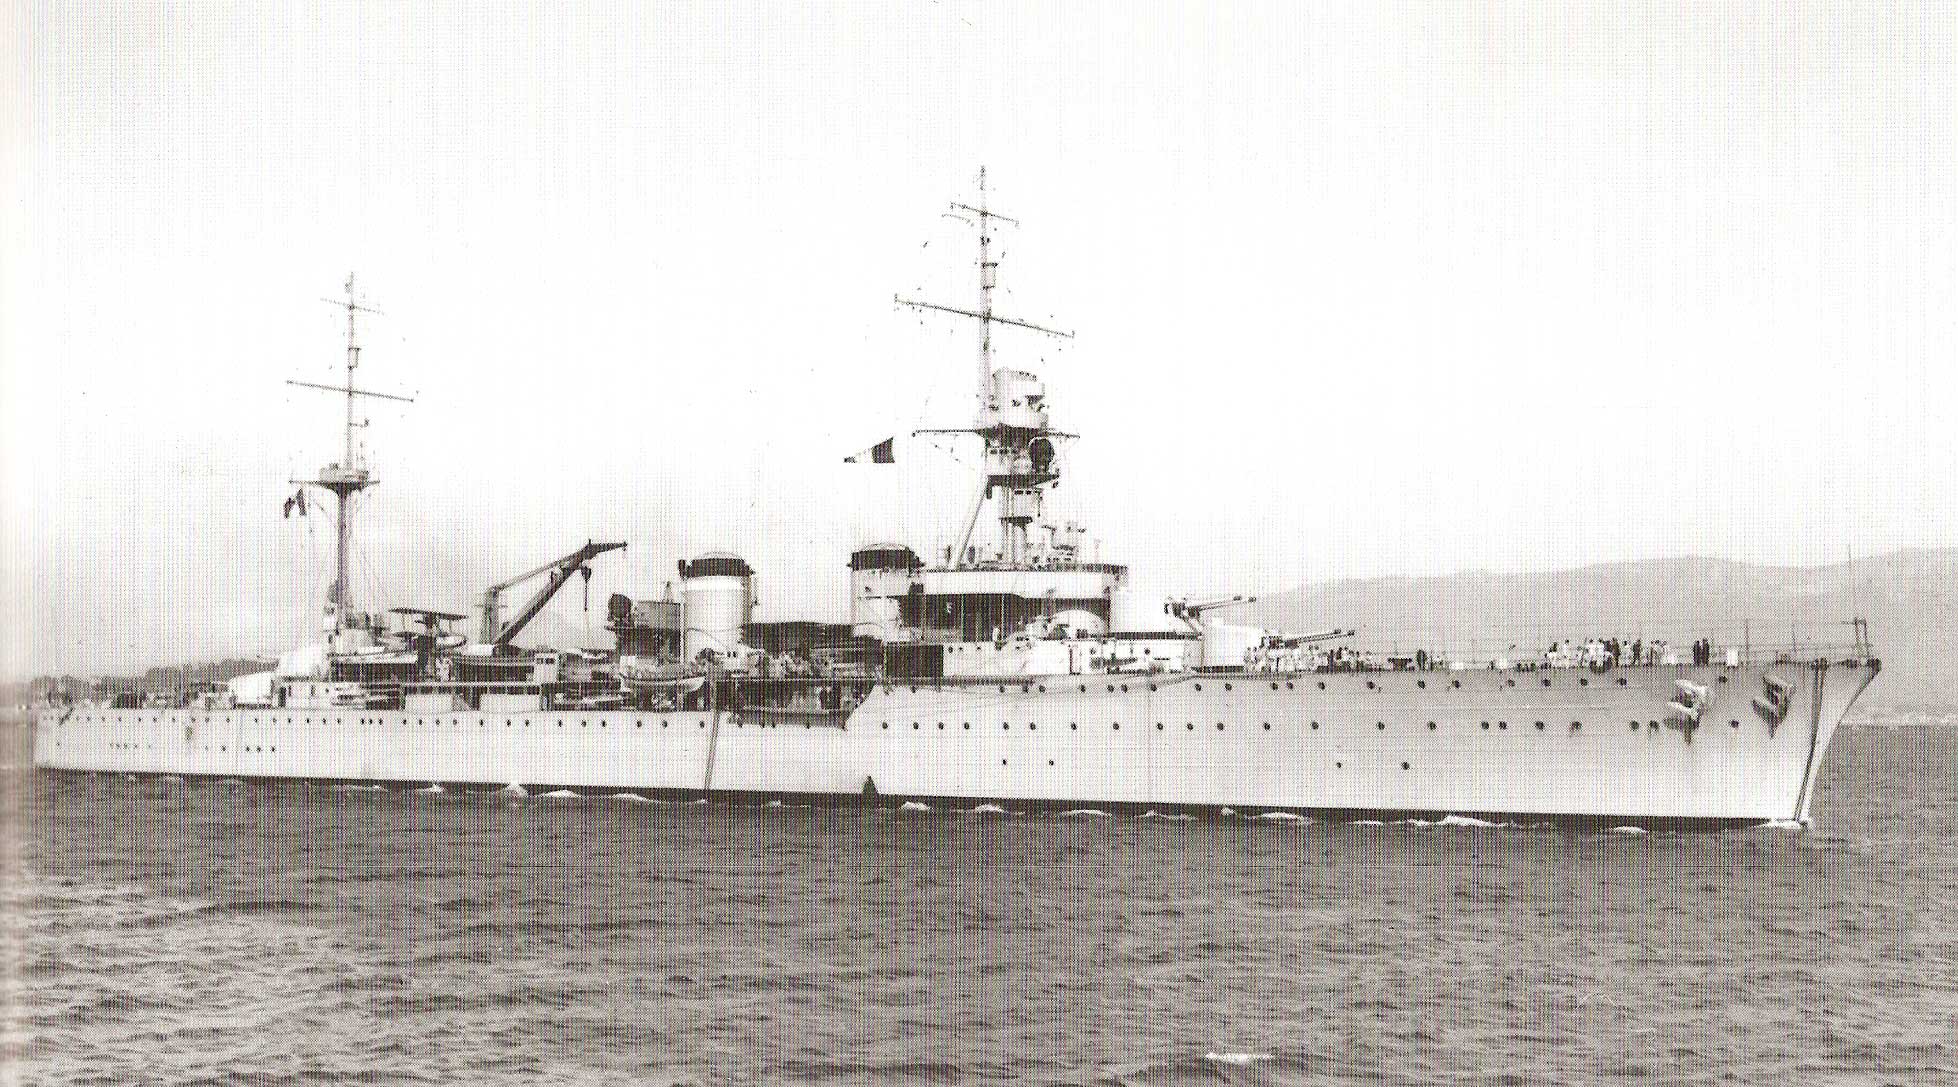 La Motte-Picquet : Ce croiseur de la classe Duguay-Trouin est très moderne et est le navire amiral de la flotte française à Koh Chang.